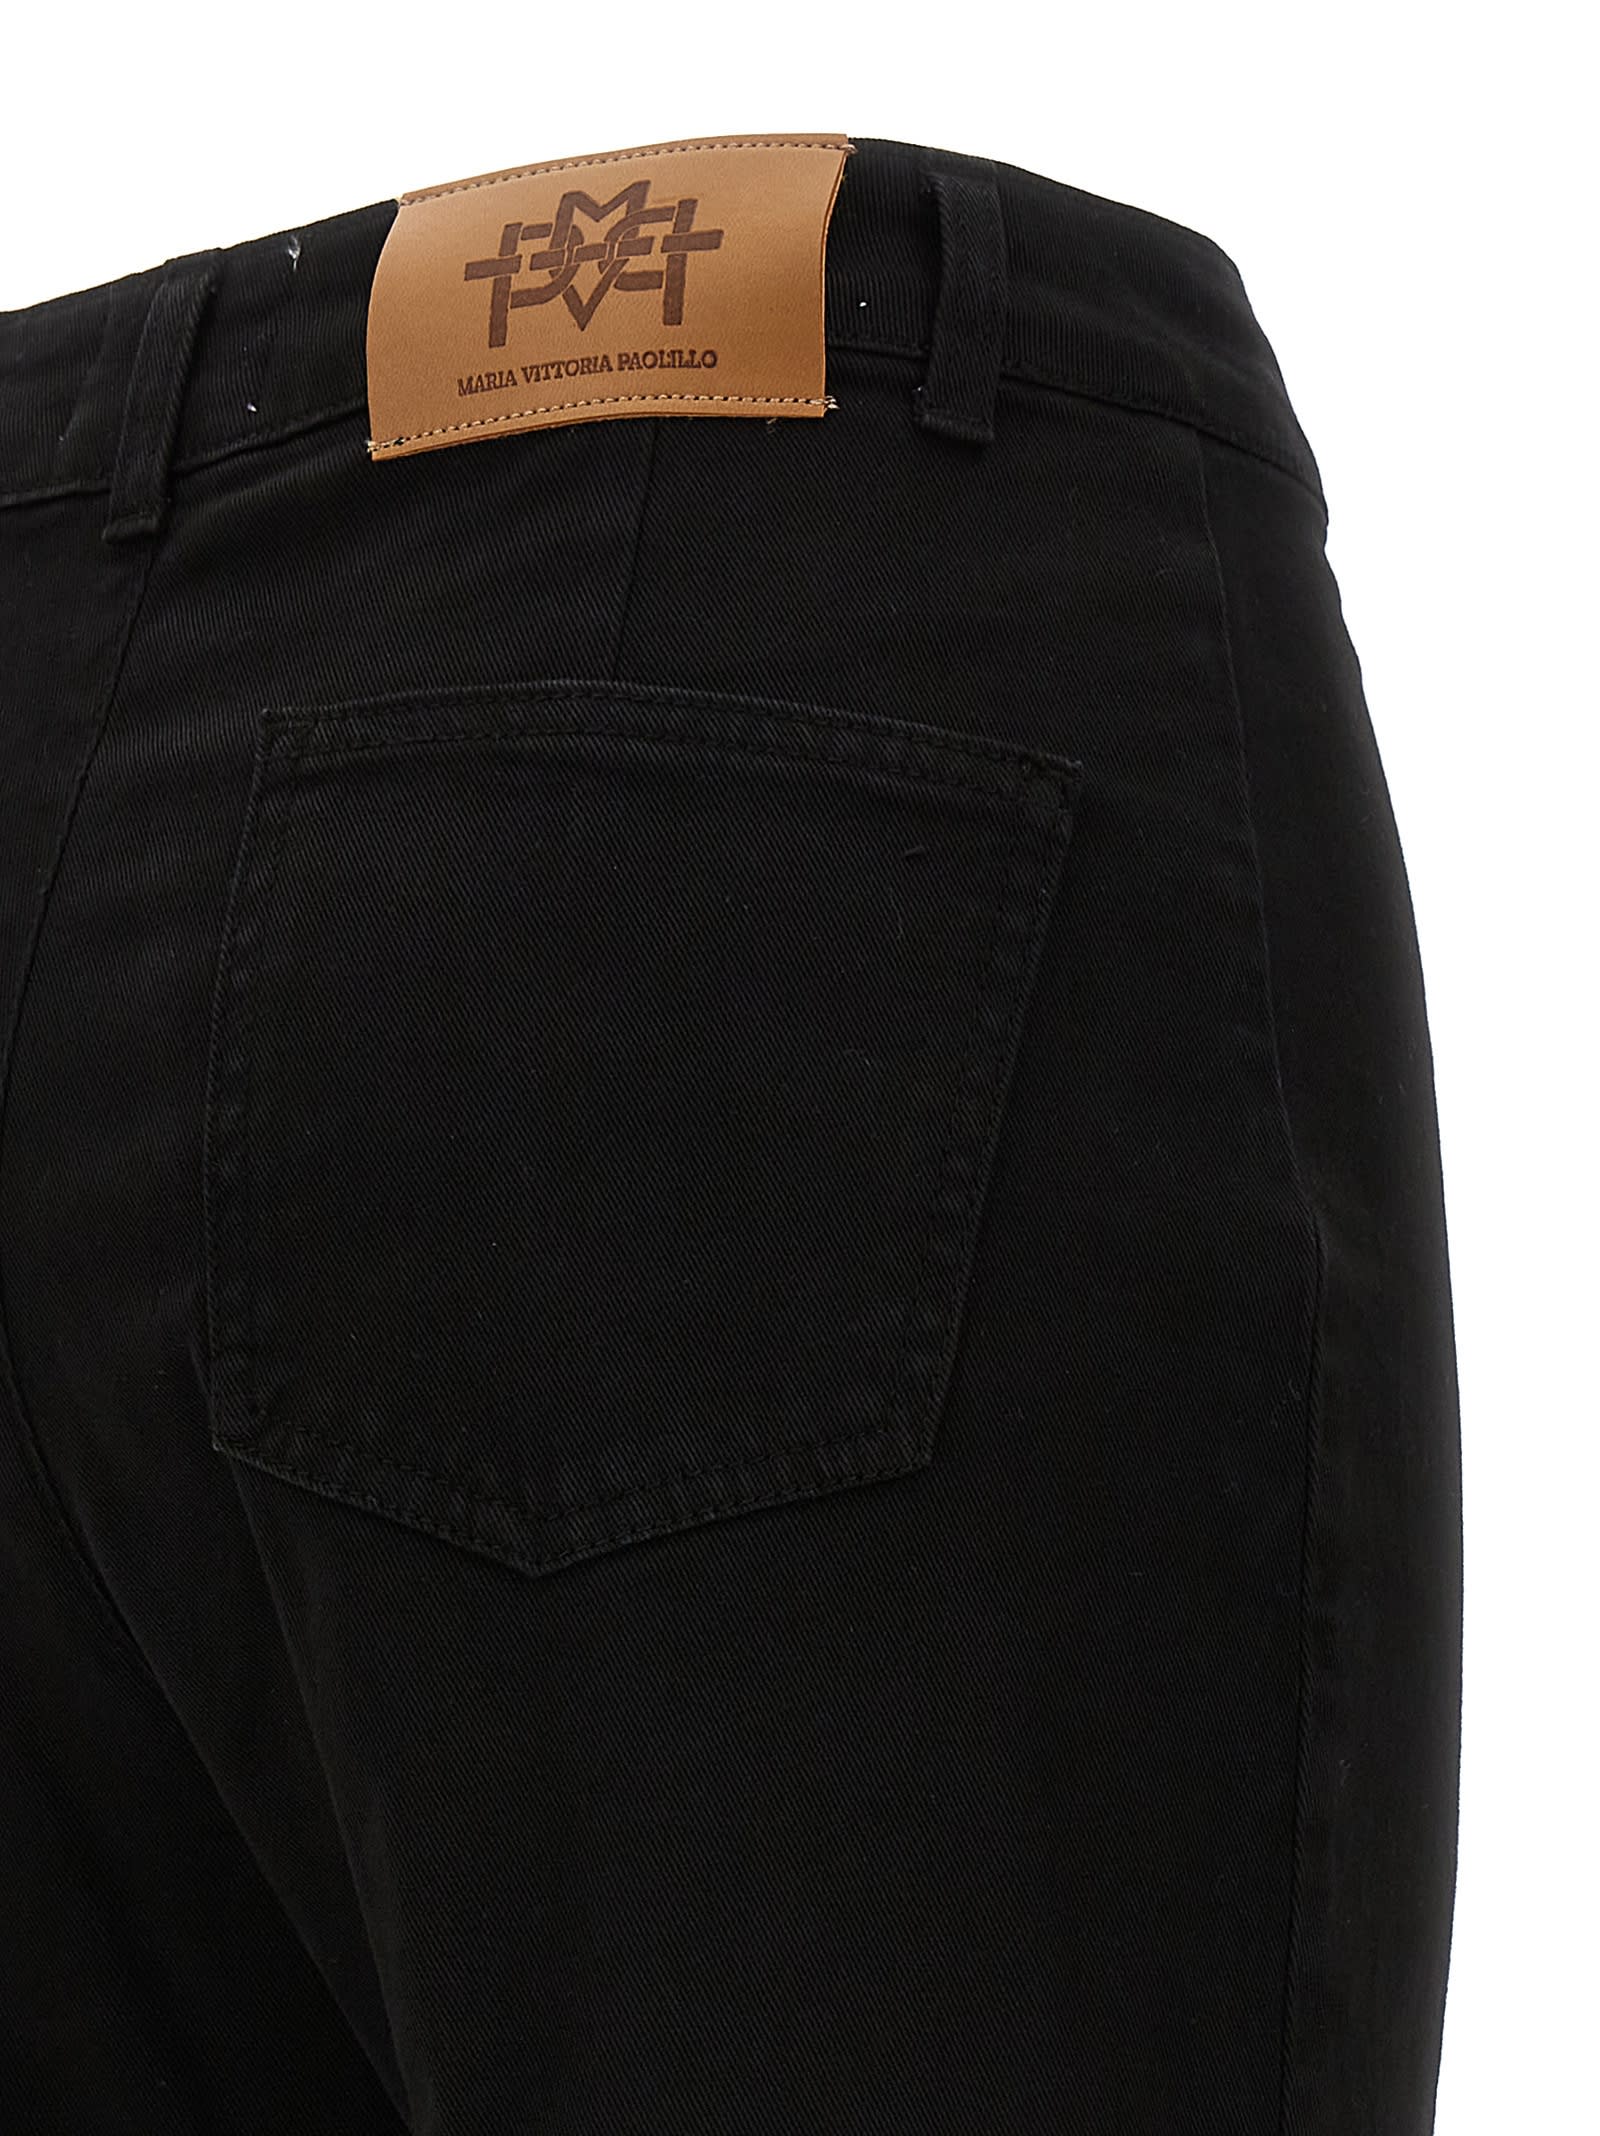 Shop Mvp Wardrobe Bonnet Jeans In Black